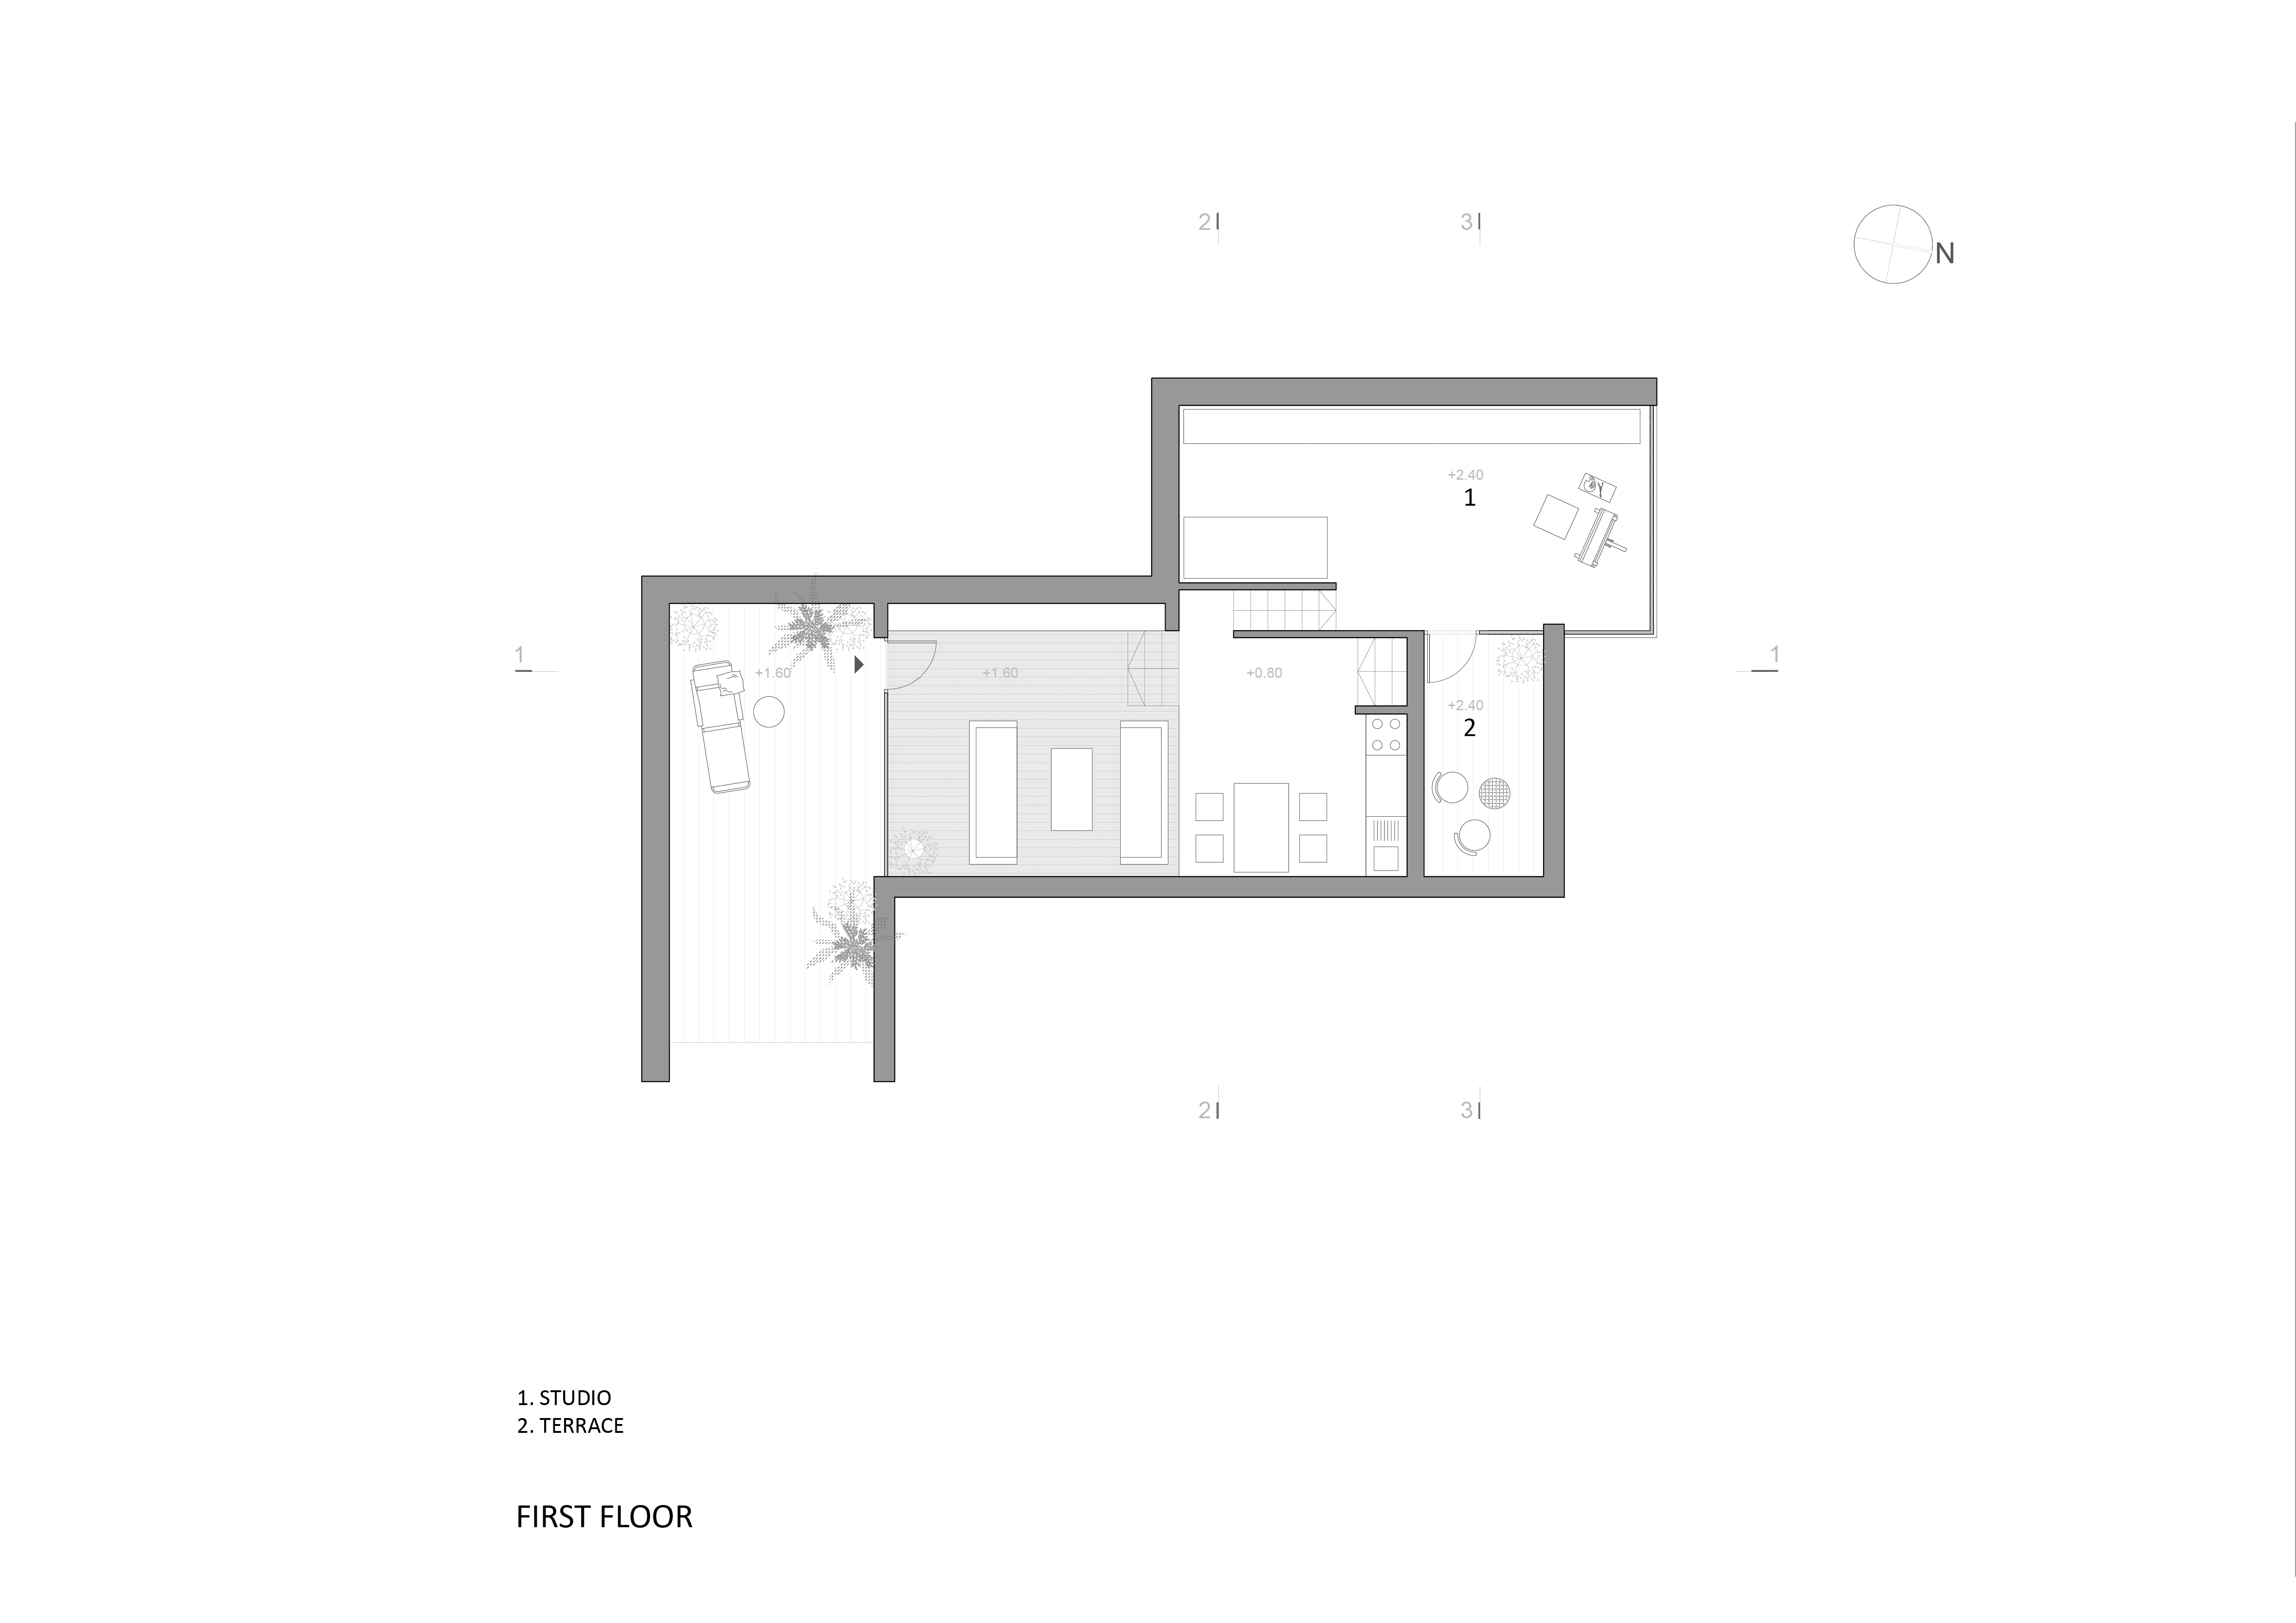 atelier-kp-first-floor